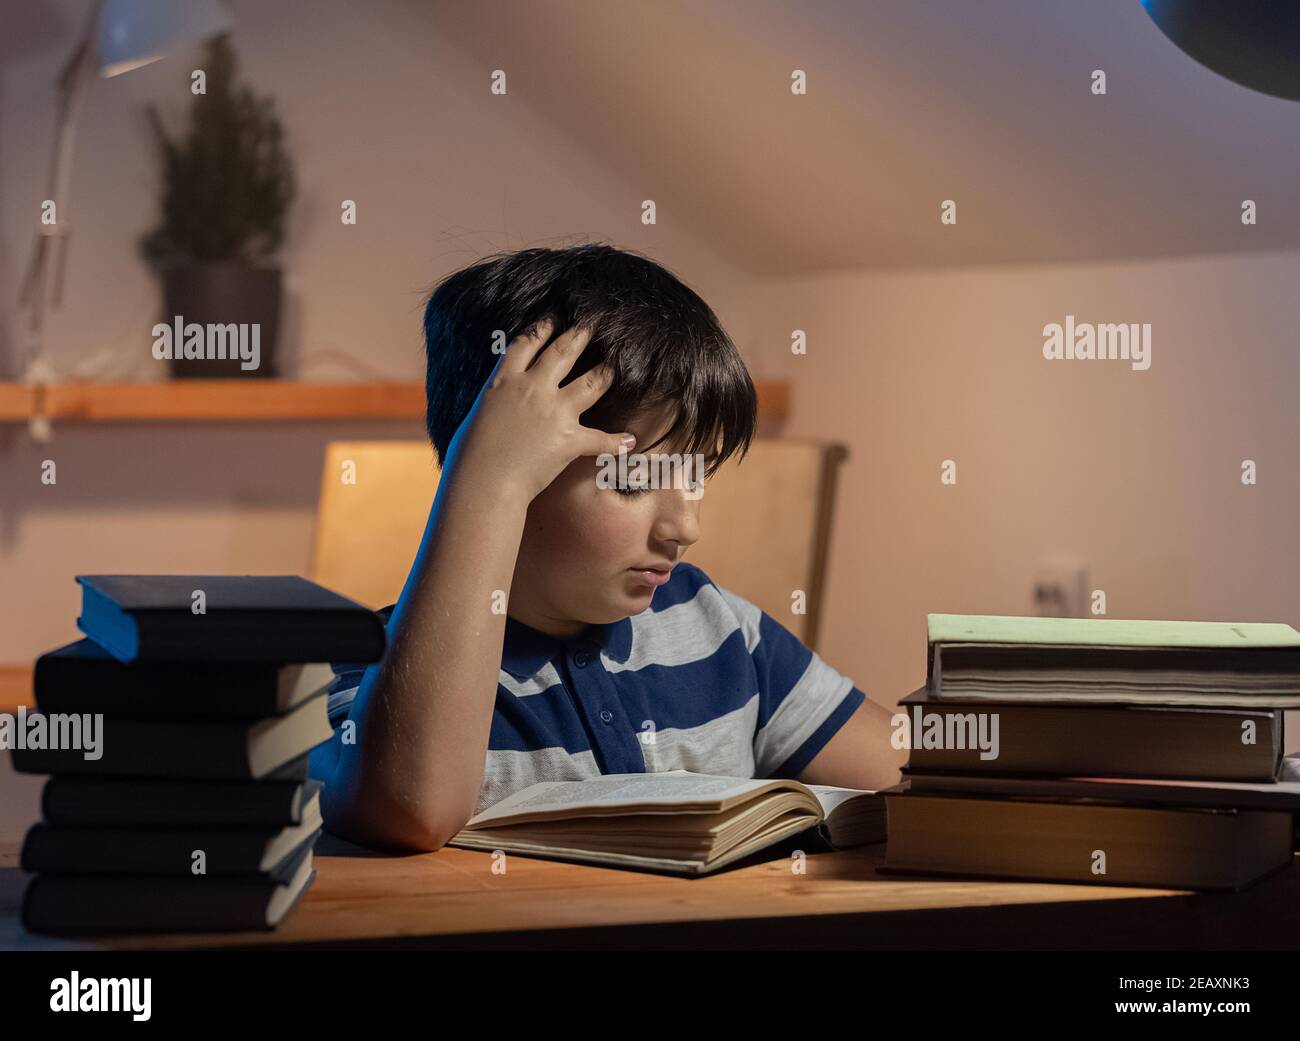 L'idée de la participation d'un enfant à l'apprentissage. Le visage concentré d'un garçon lisant un livre dans sa chambre. L'émotion d'une légère tension et concentration Banque D'Images